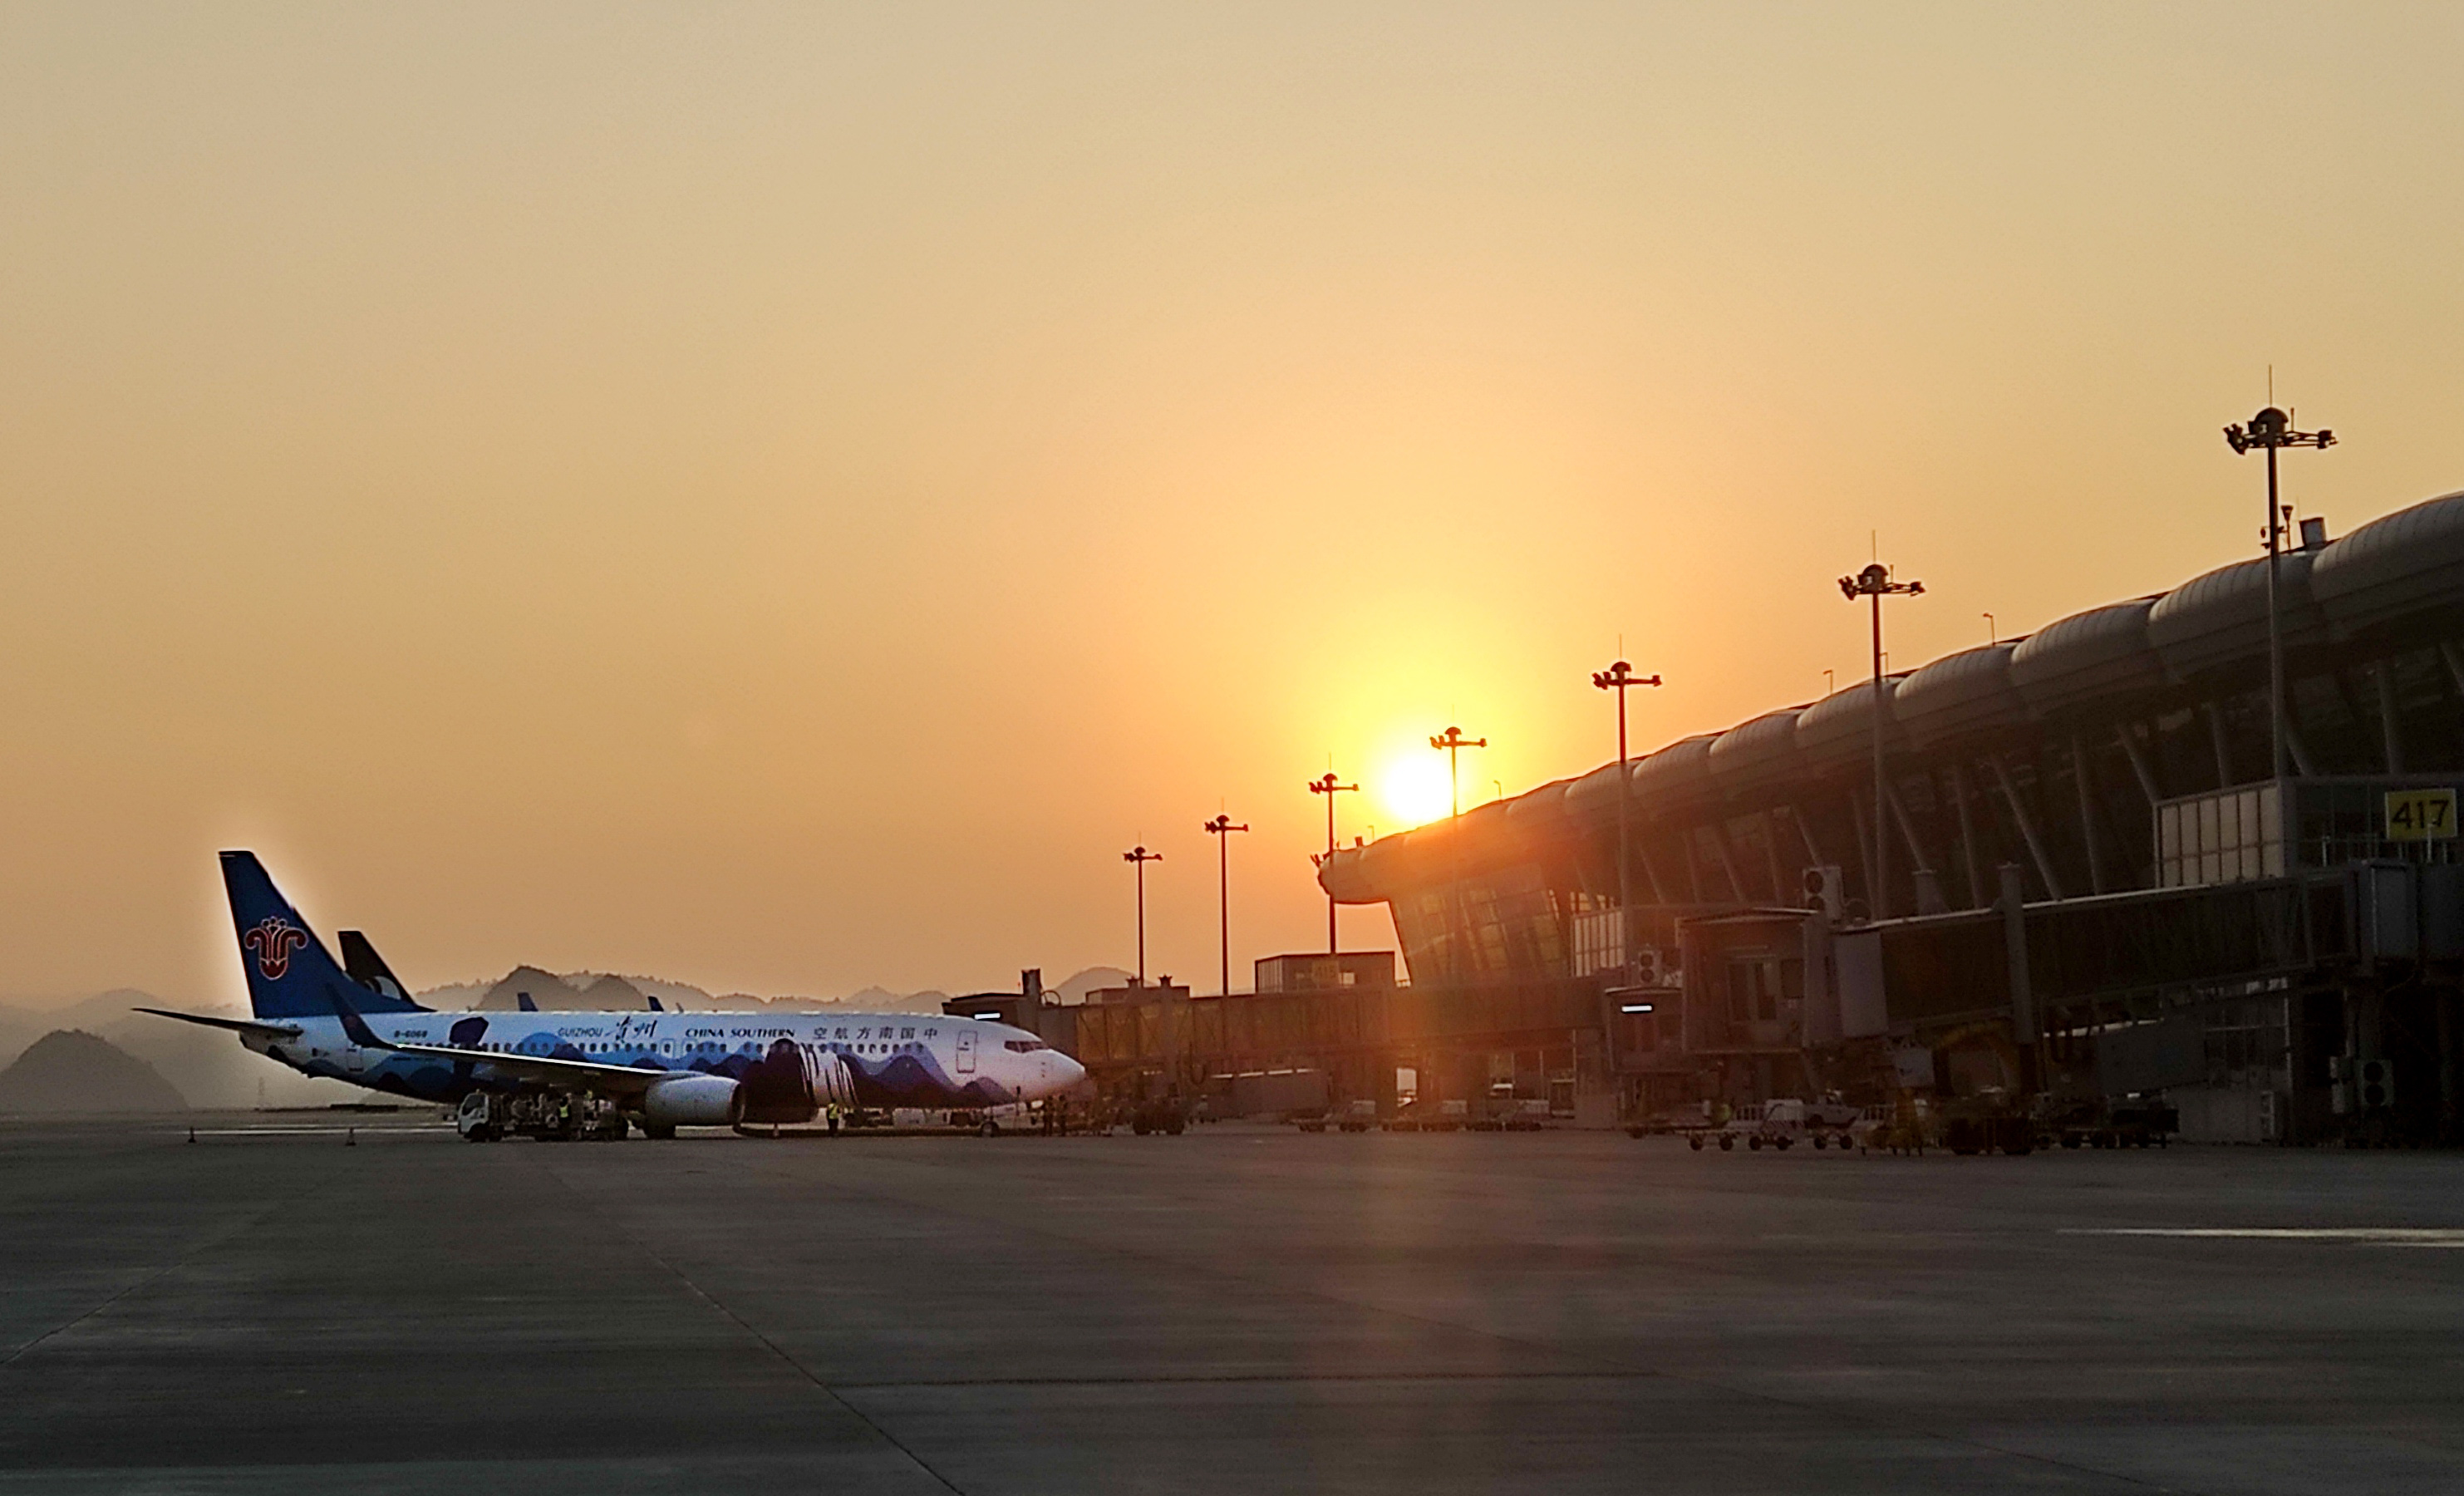 惠州机场夏秋航线新增8条航线 最新时刻表来了